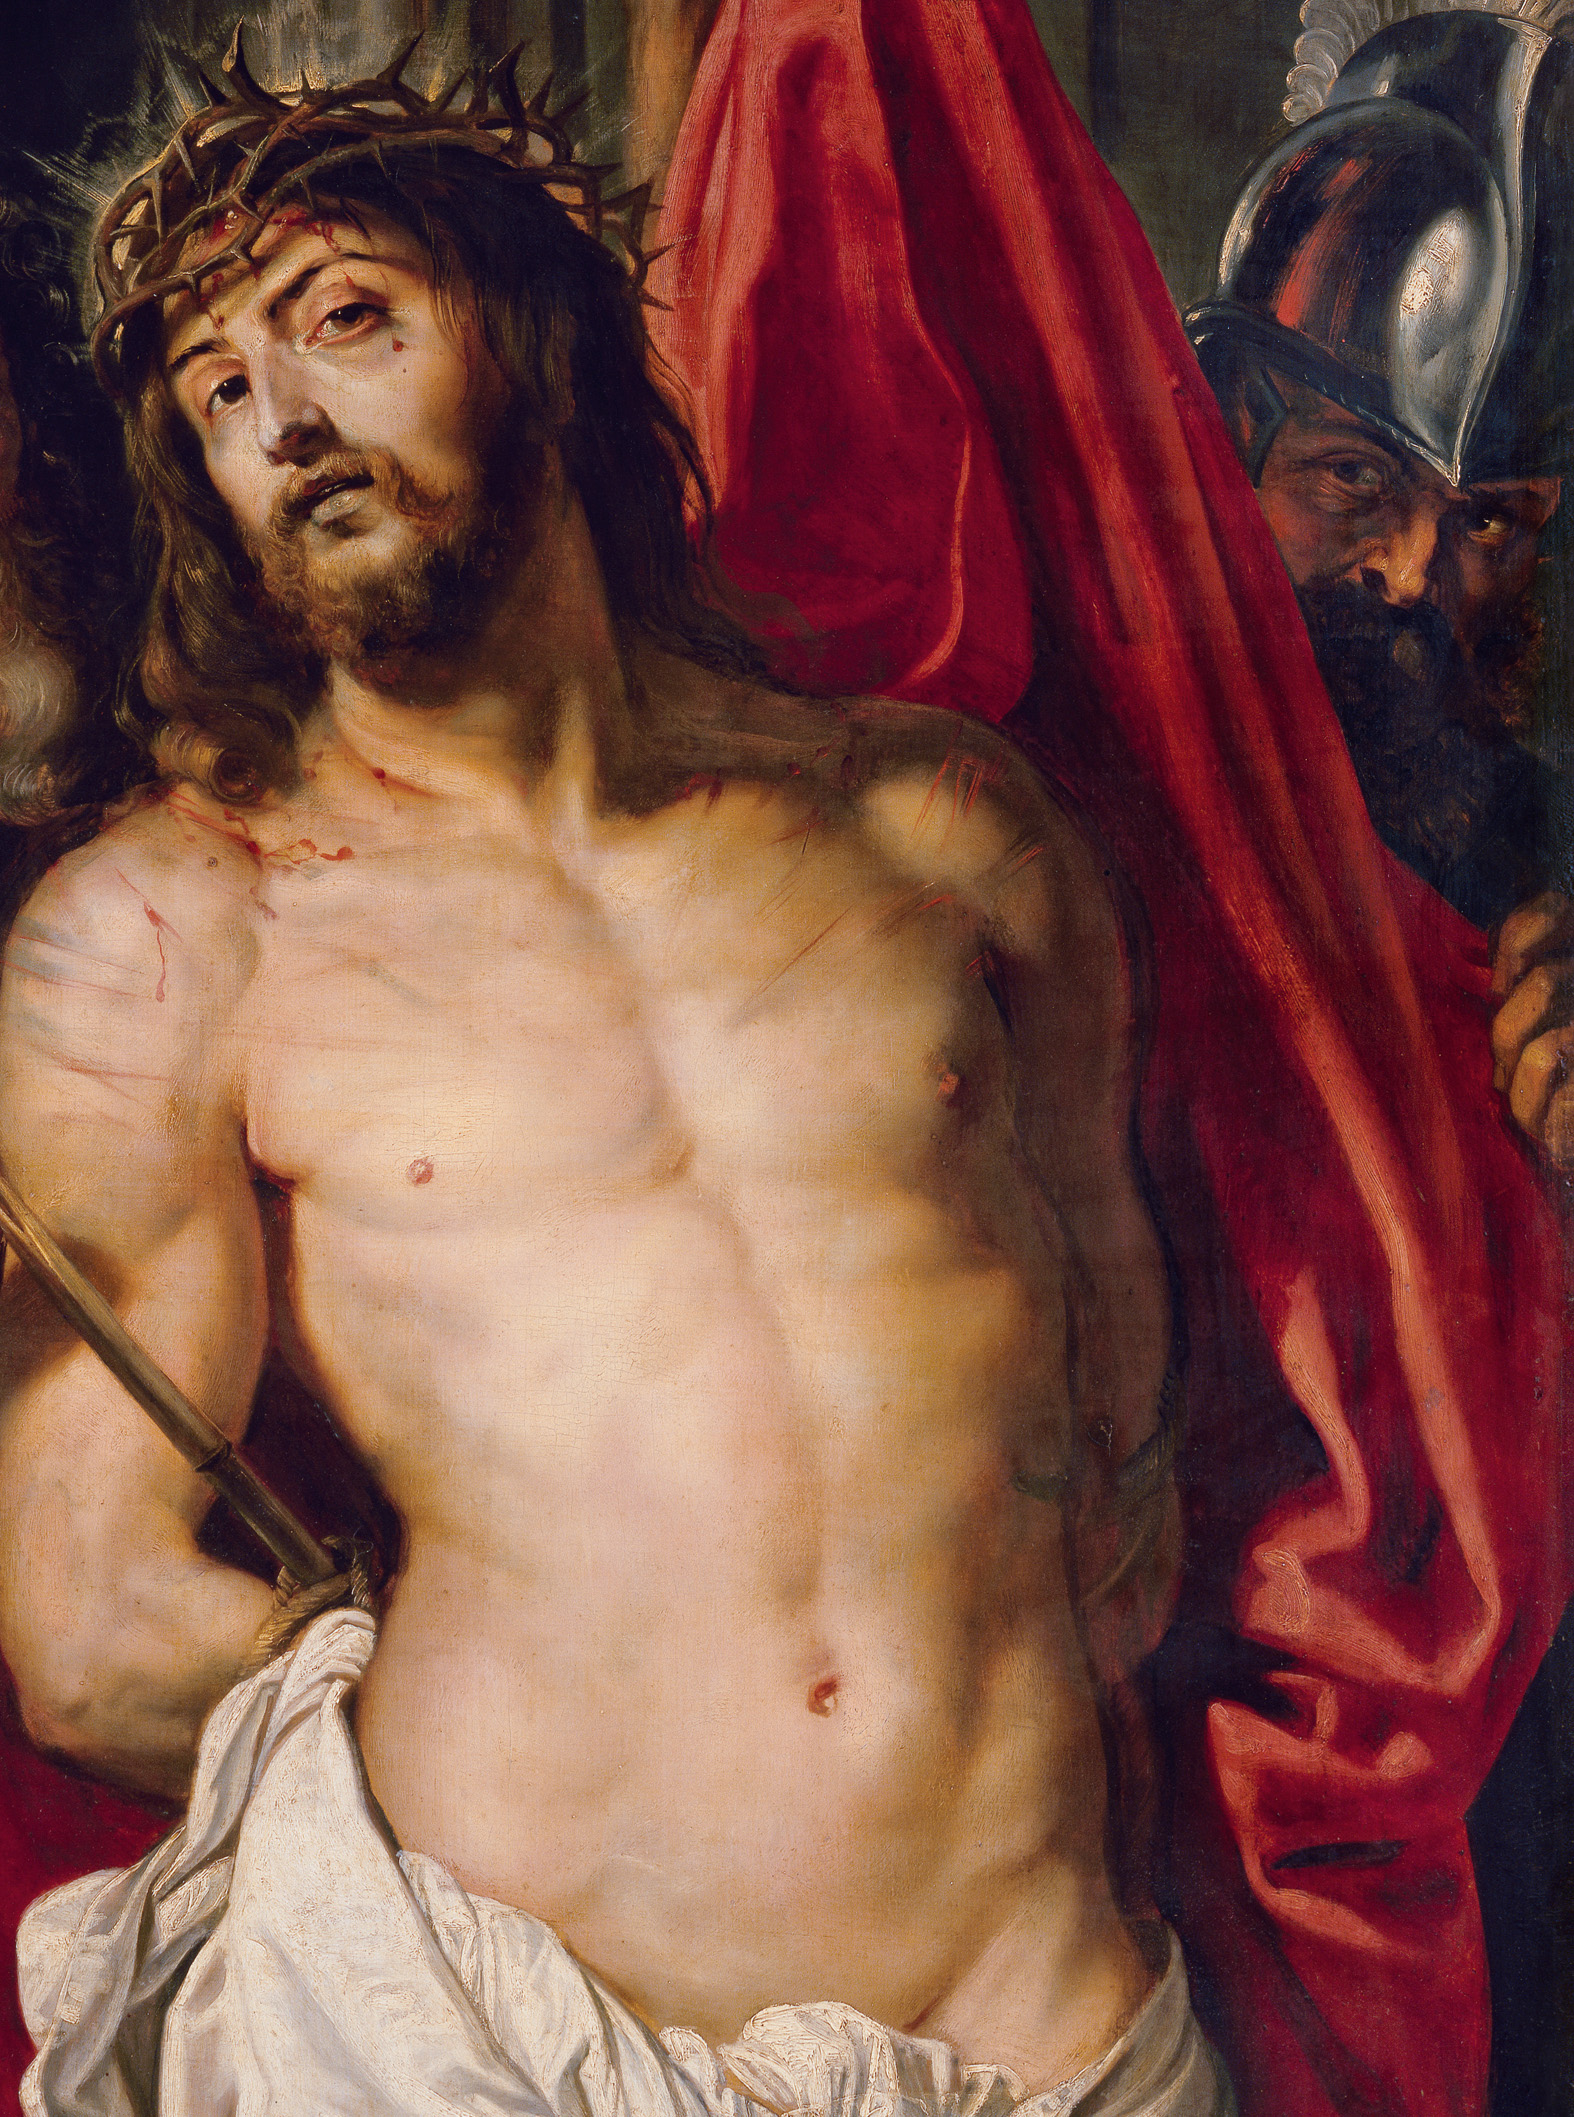 Coroa de espinhos (Ecce Homo) by Peter Paul Rubens - no later than 1612 Kunsthistorisches Museum